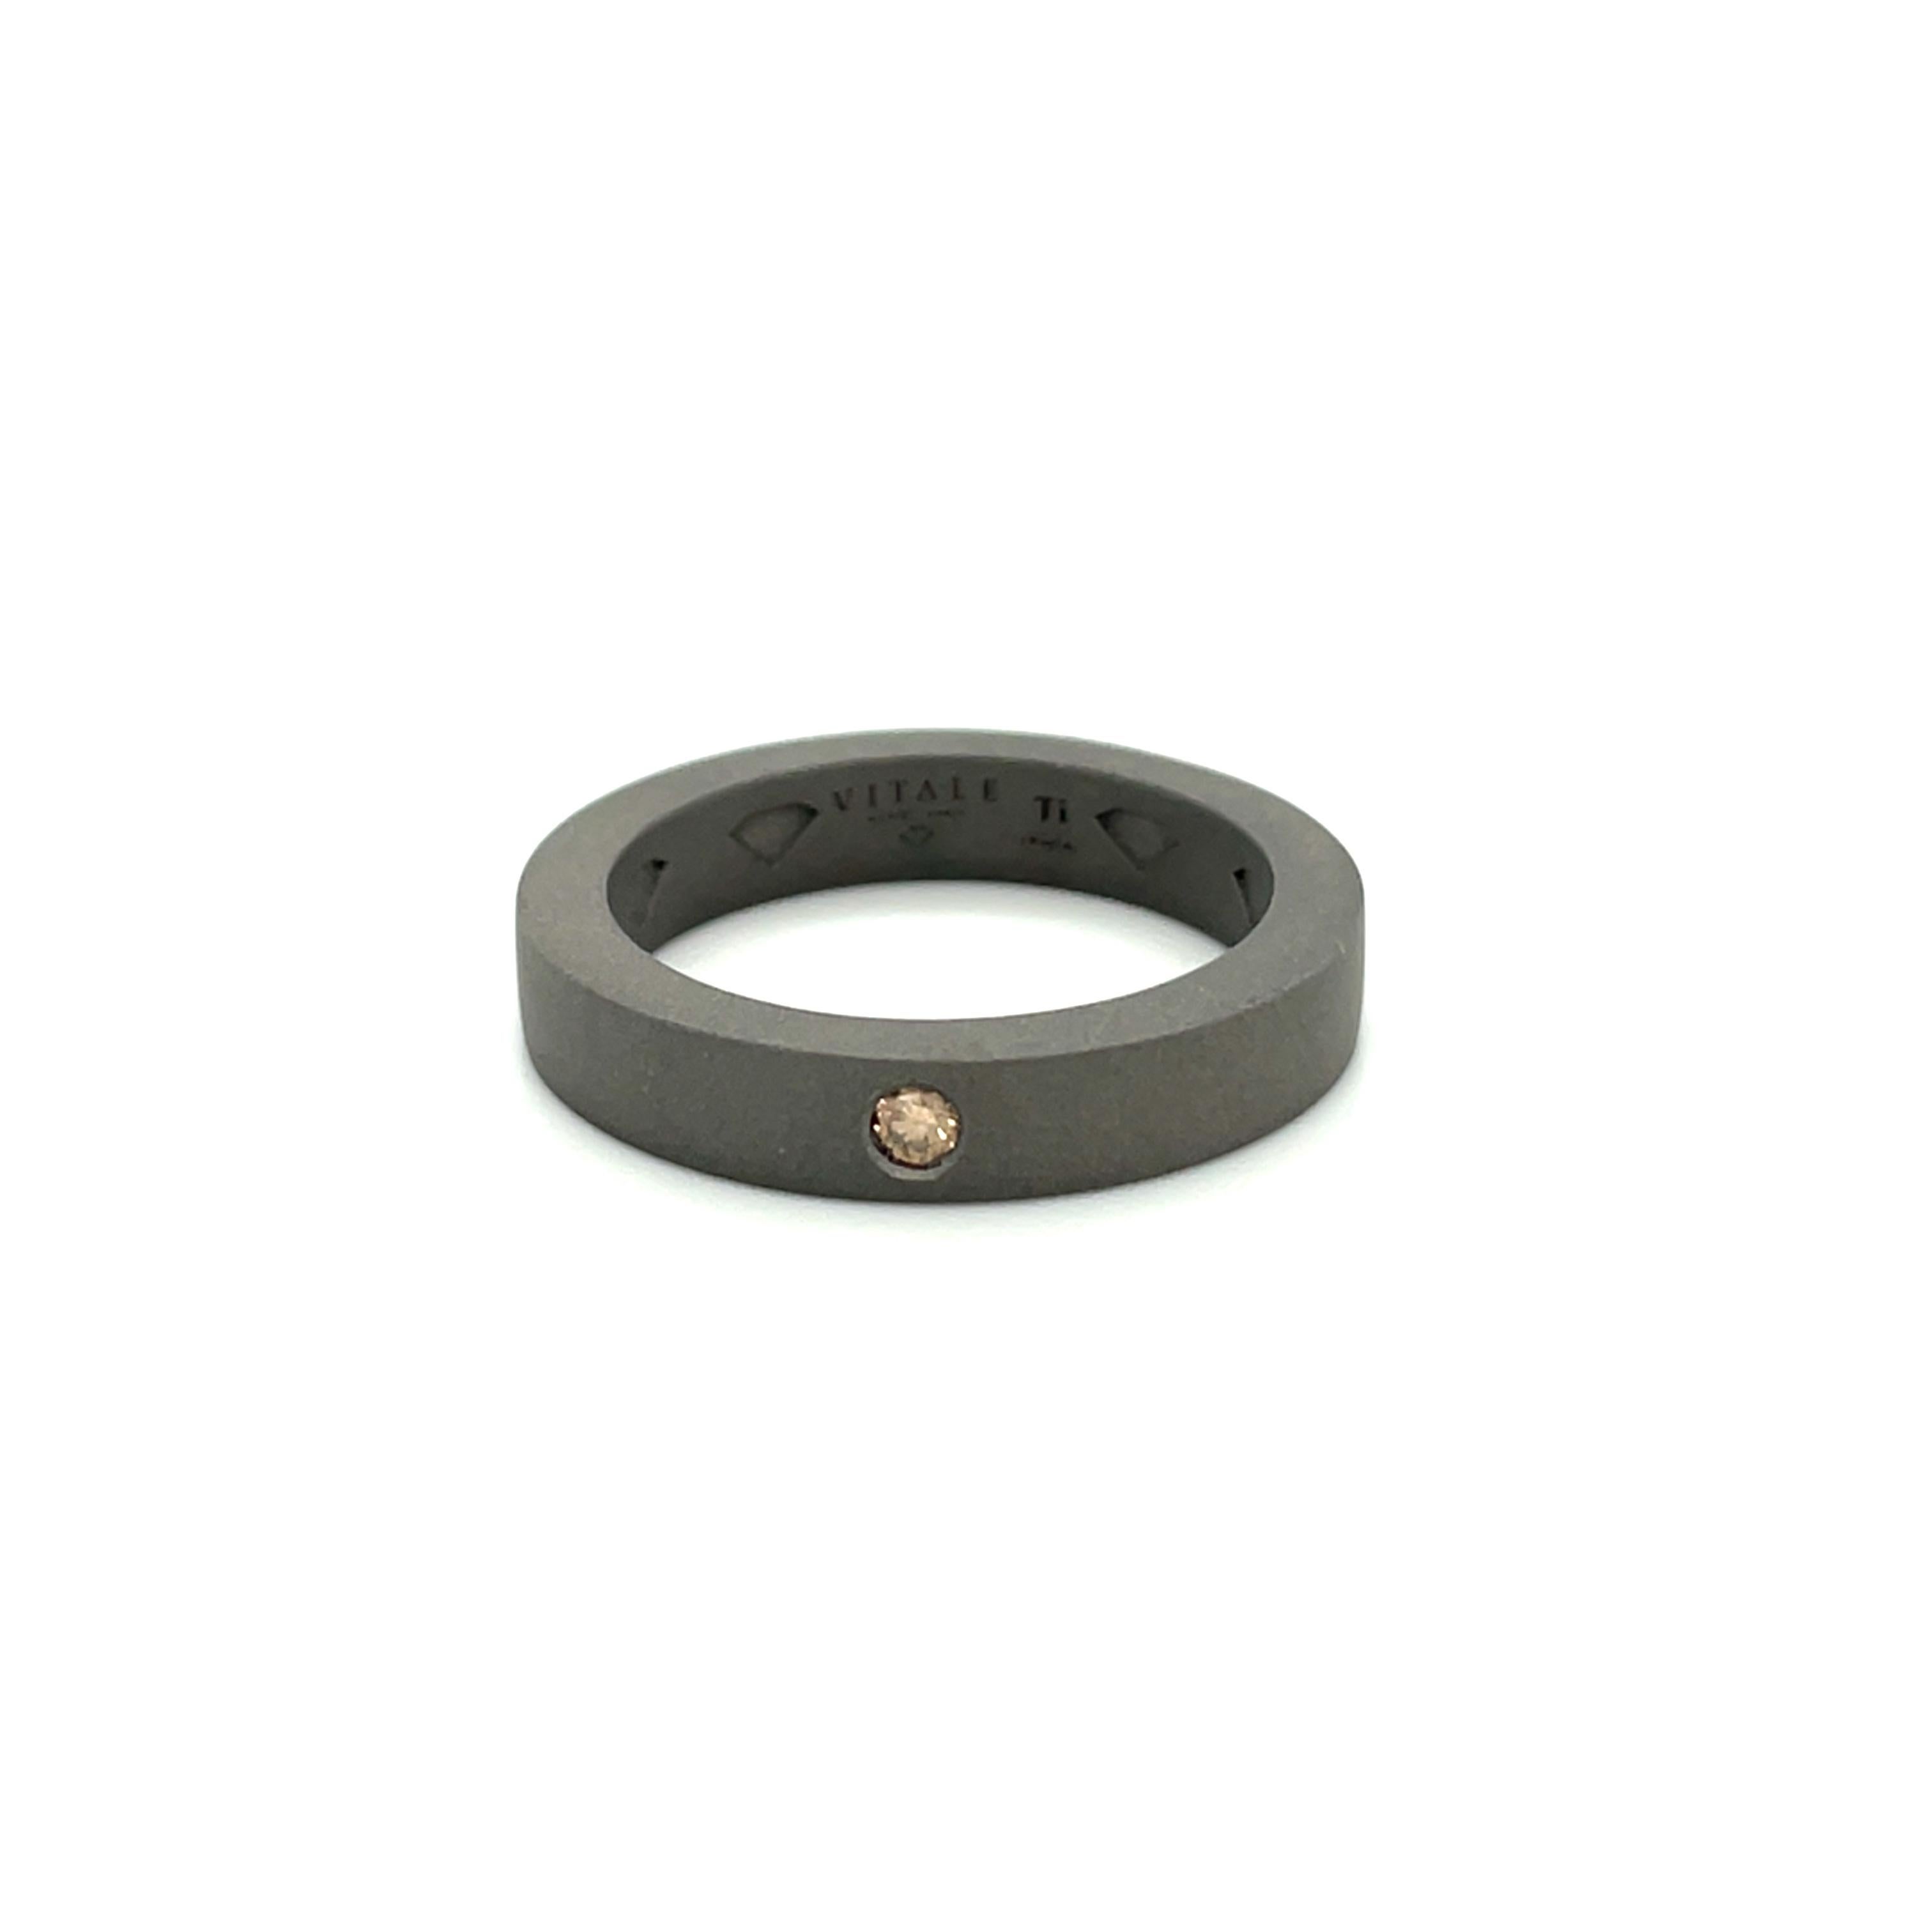 Der Titanring ist aus unserer Heroes Collection'S. Dieser maskuline Ring ist mit einem runden braunen Diamanten von insgesamt 0,05 Karat verziert. Die Ringgröße beträgt 60 mm/9 US-Größe und ist nicht größenverstellbar. Perfekt für einen stilvollen